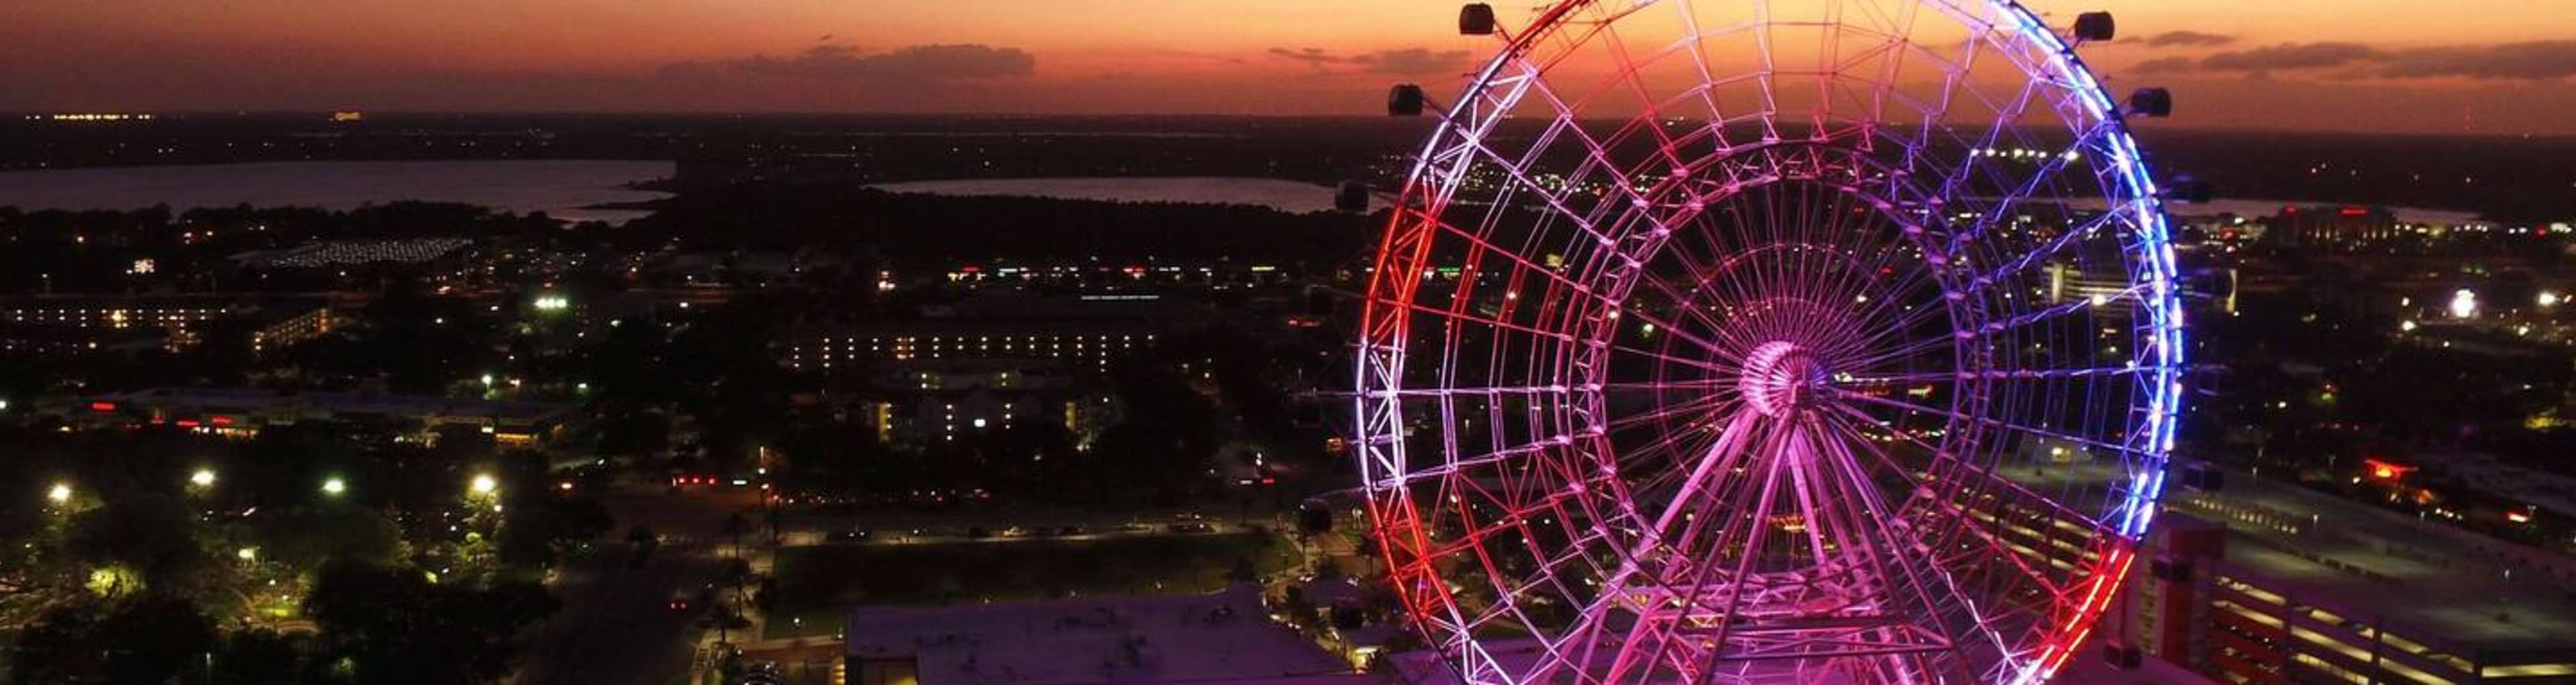 La noria de observación The Wheel, en Icon Park, Orlando